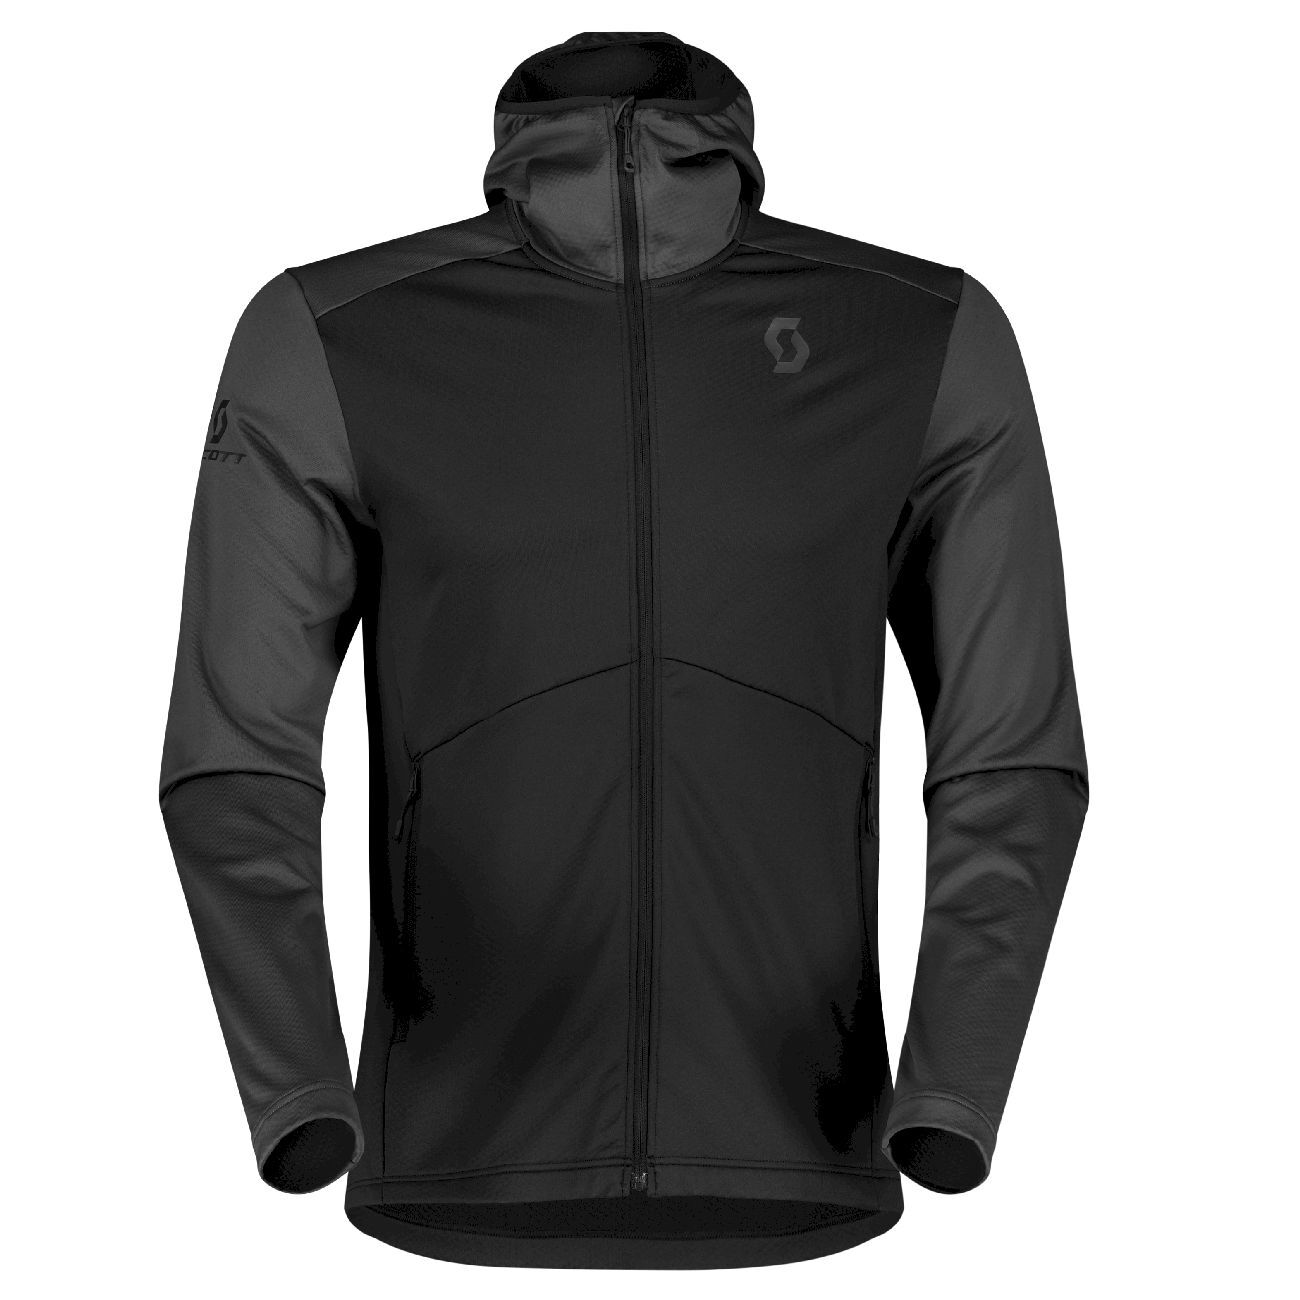 Scott Defined Tech Hoody - Fleece jacket - Men's